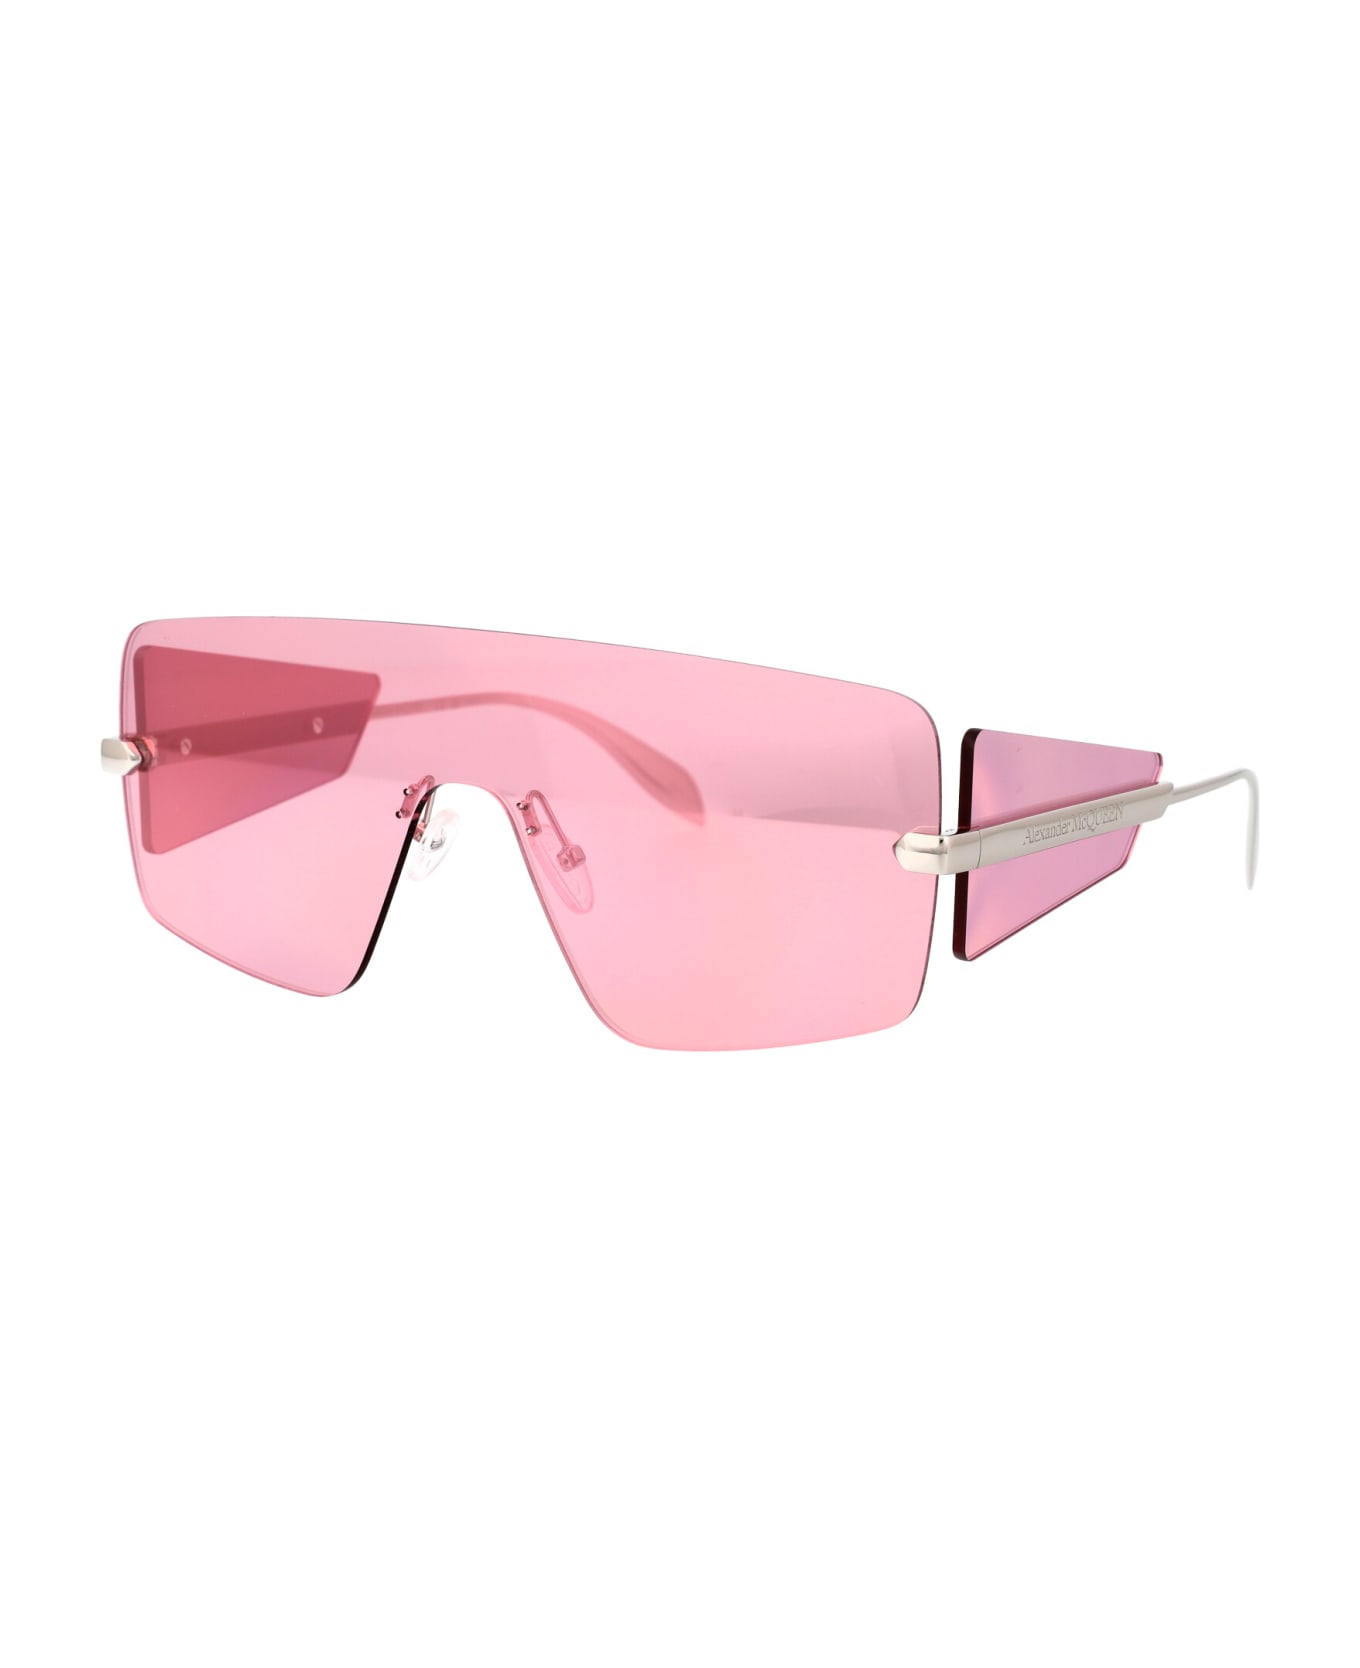 Alexander McQueen Eyewear Am0460s Sunglasses - 004 SILVER SILVER PINK